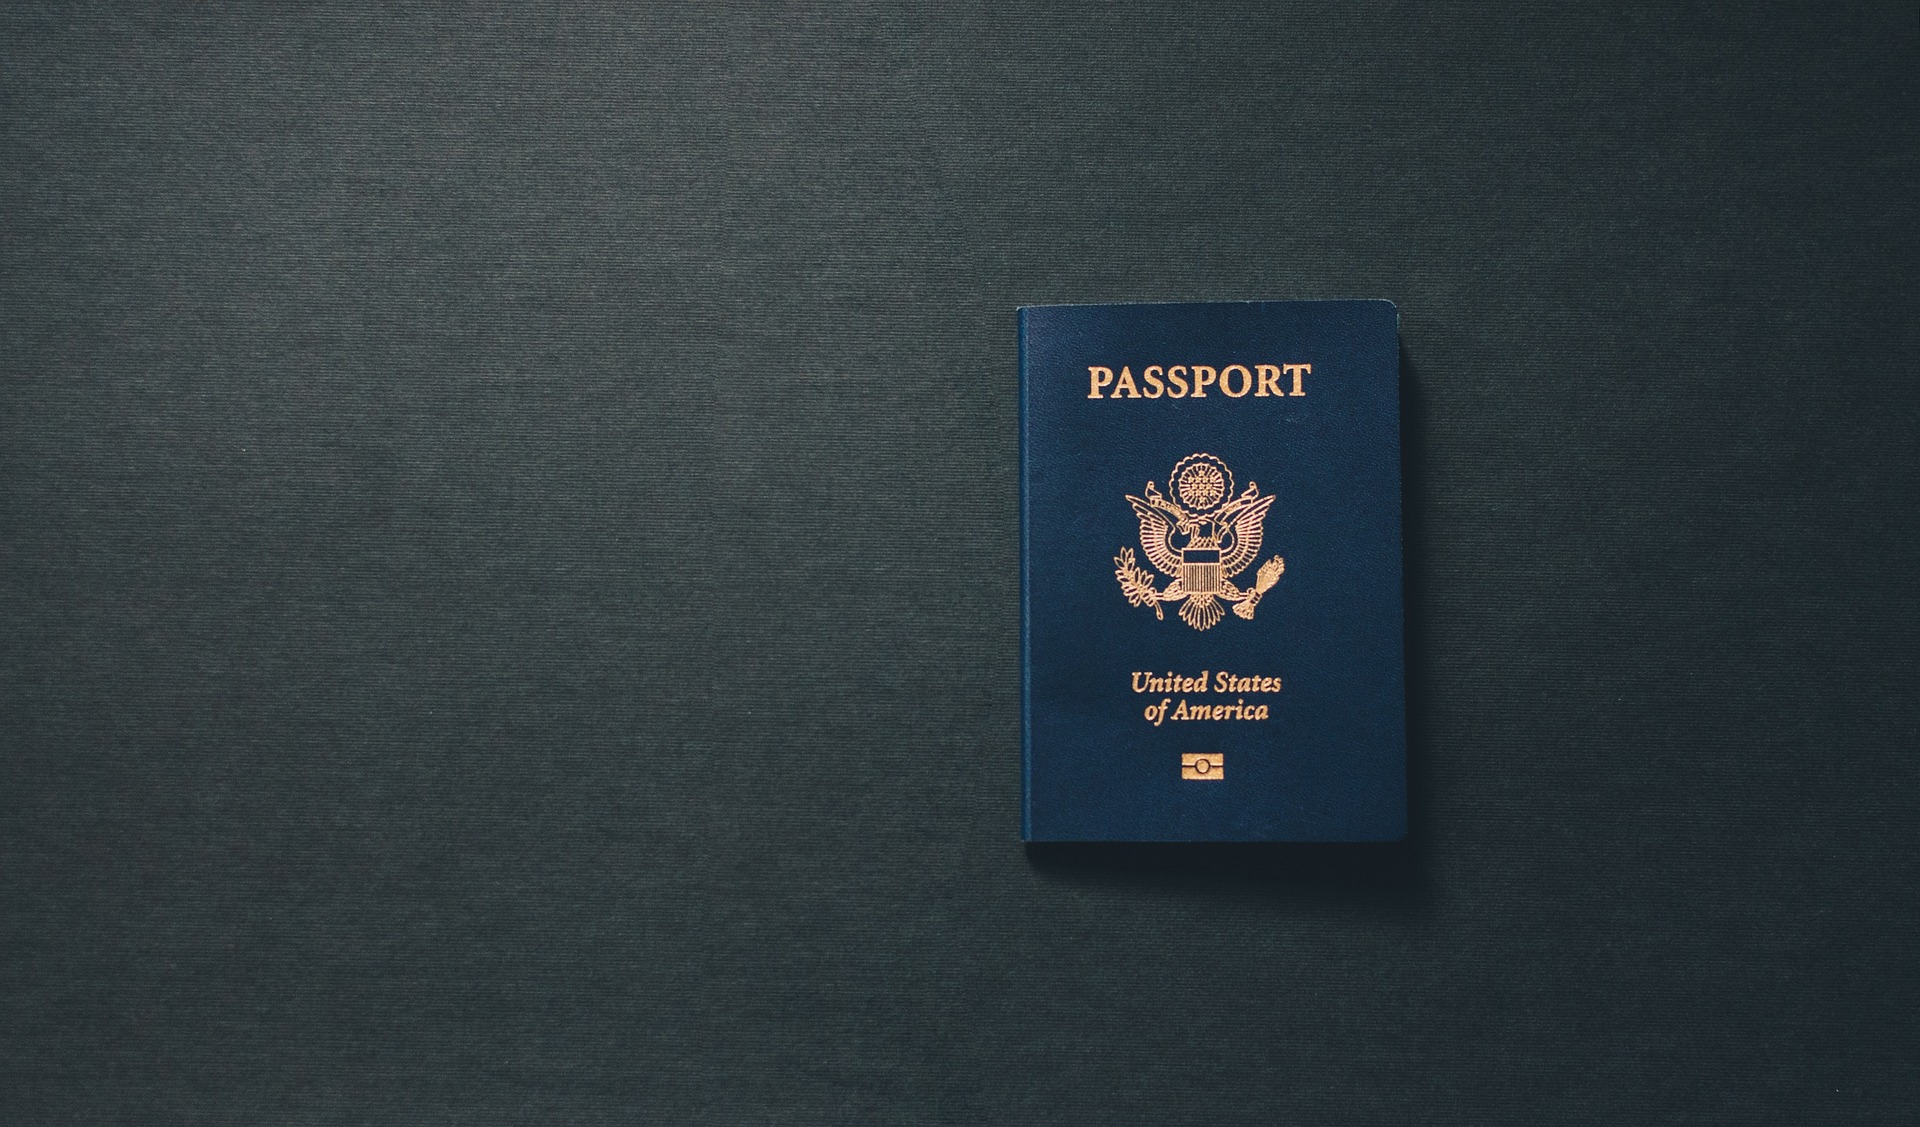 passport-gd3a586a63_1920